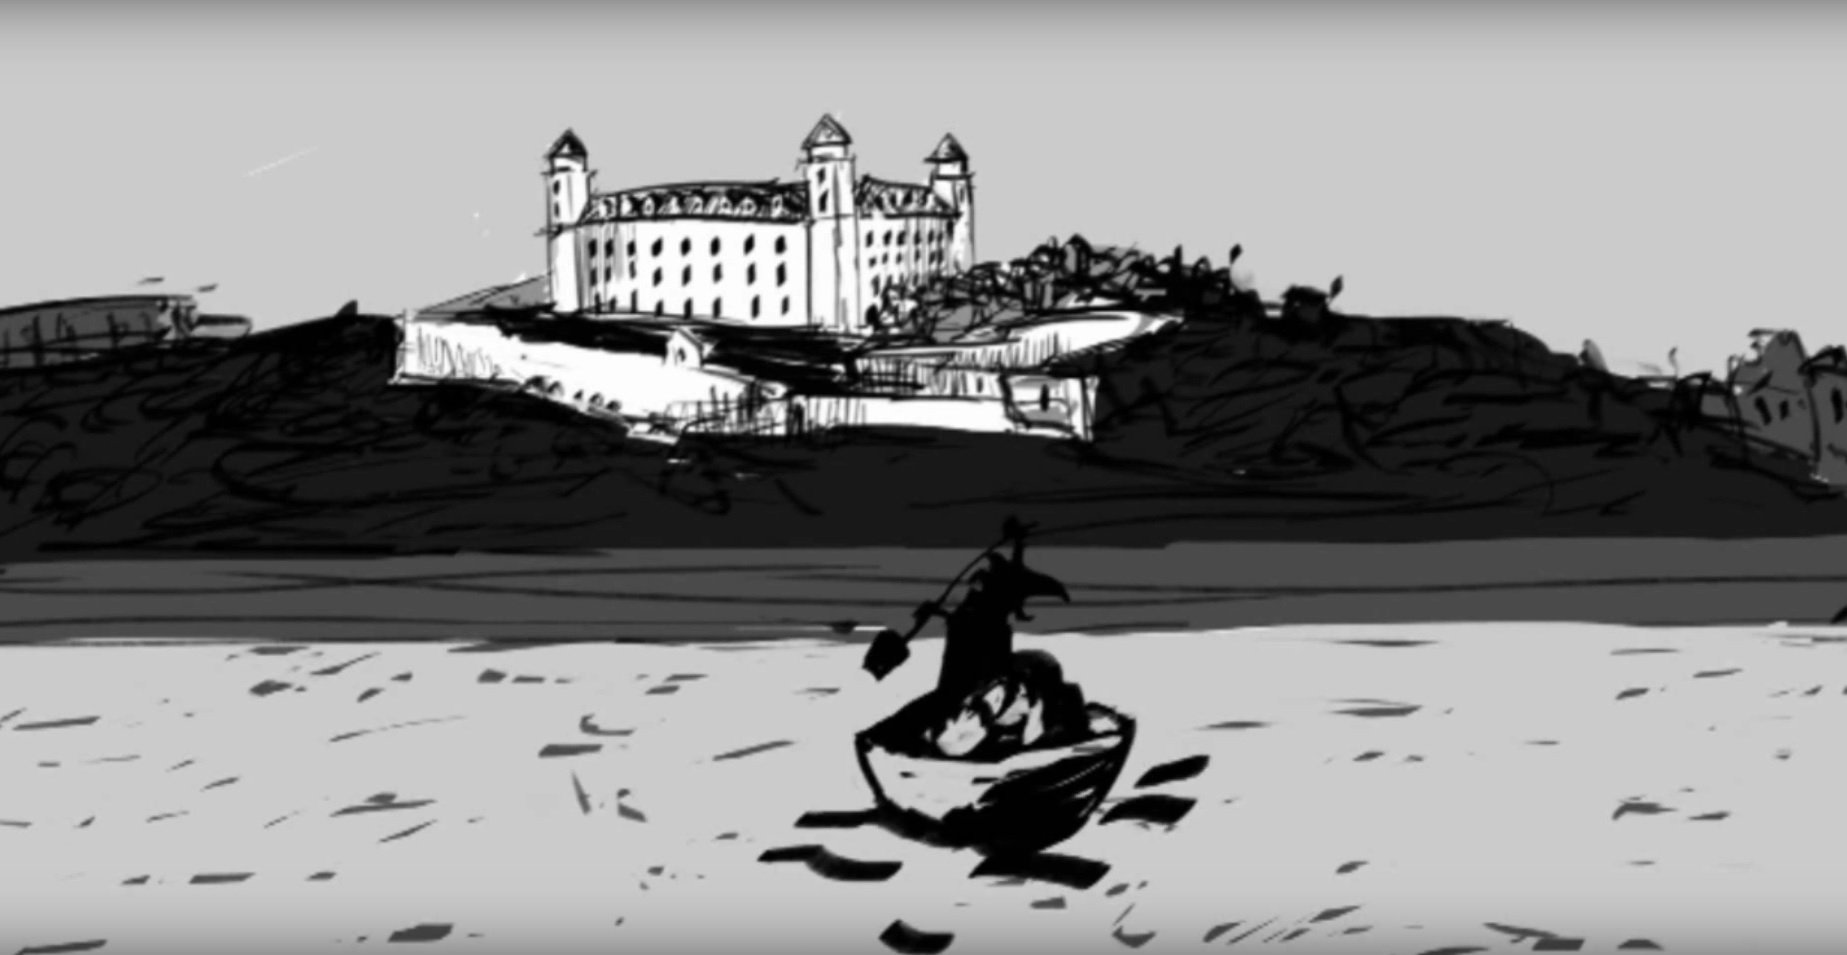 Bienále animácie Bratislava zvučka